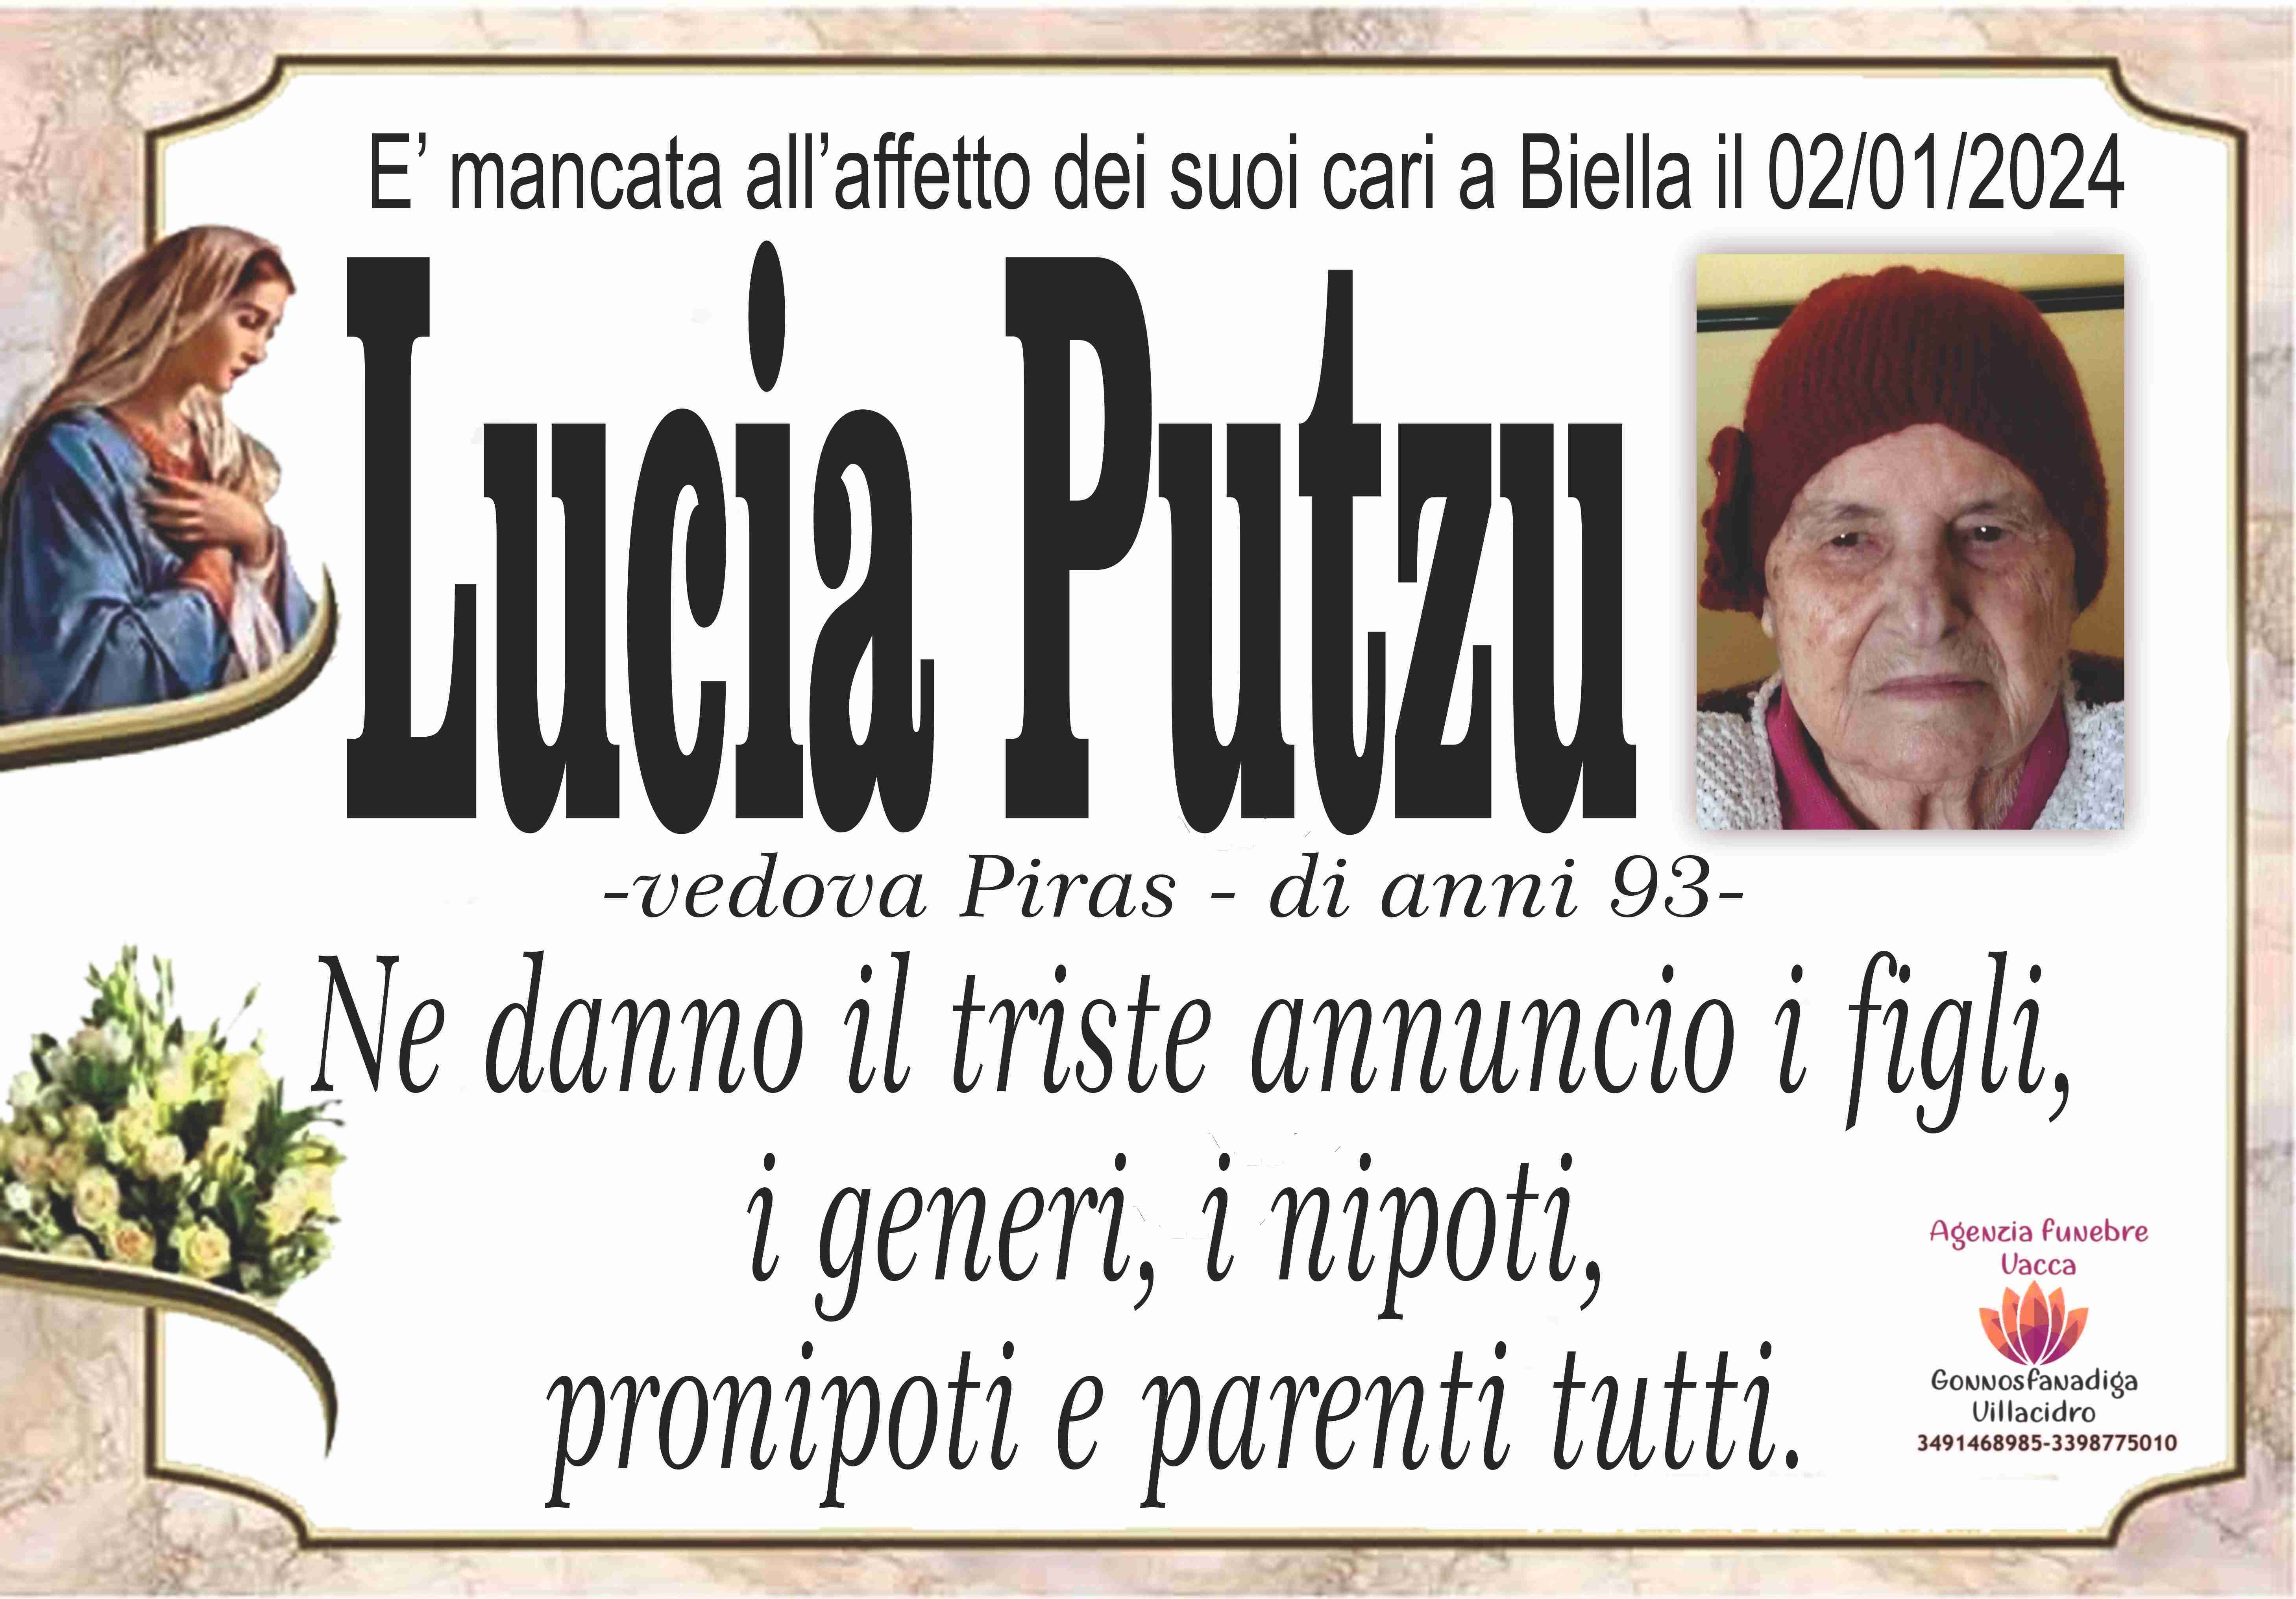 Lucia Putzu